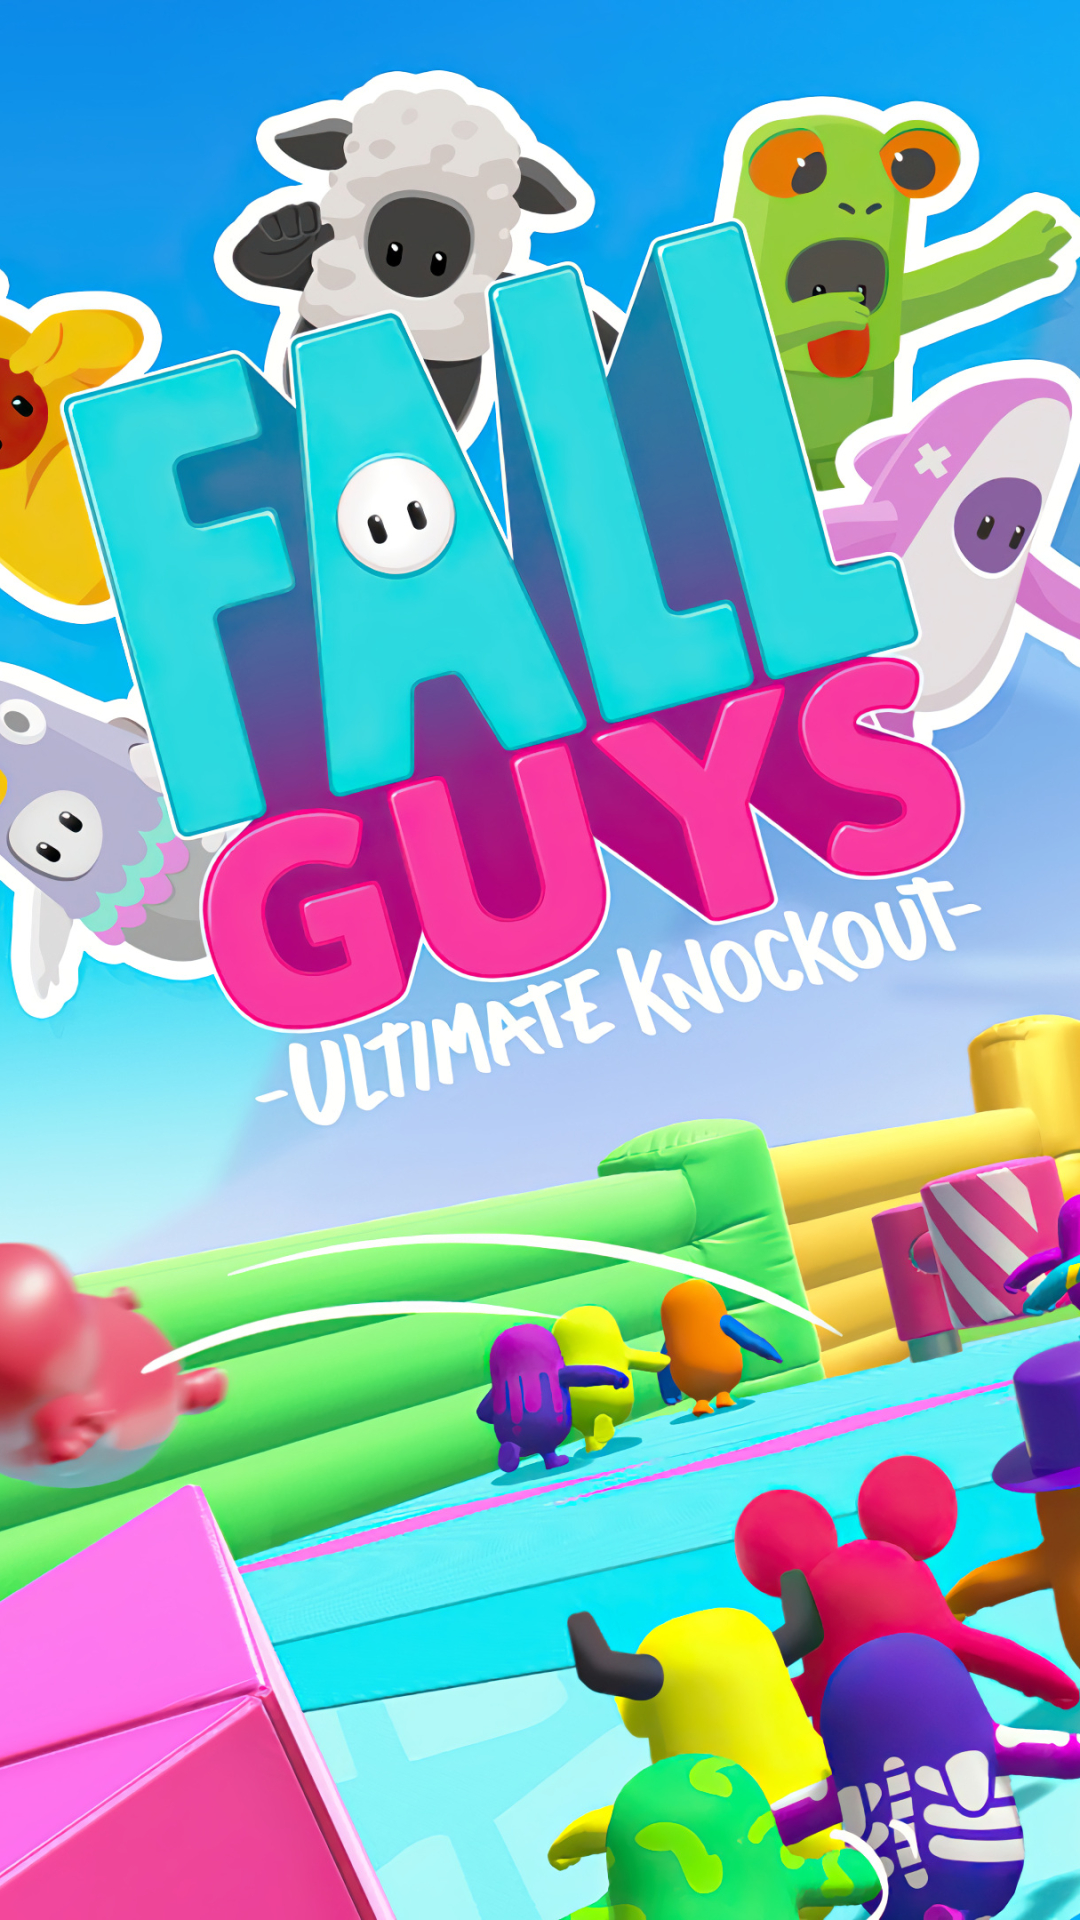 Descarga gratuita de fondo de pantalla para móvil de Videojuego, Fall Guys.